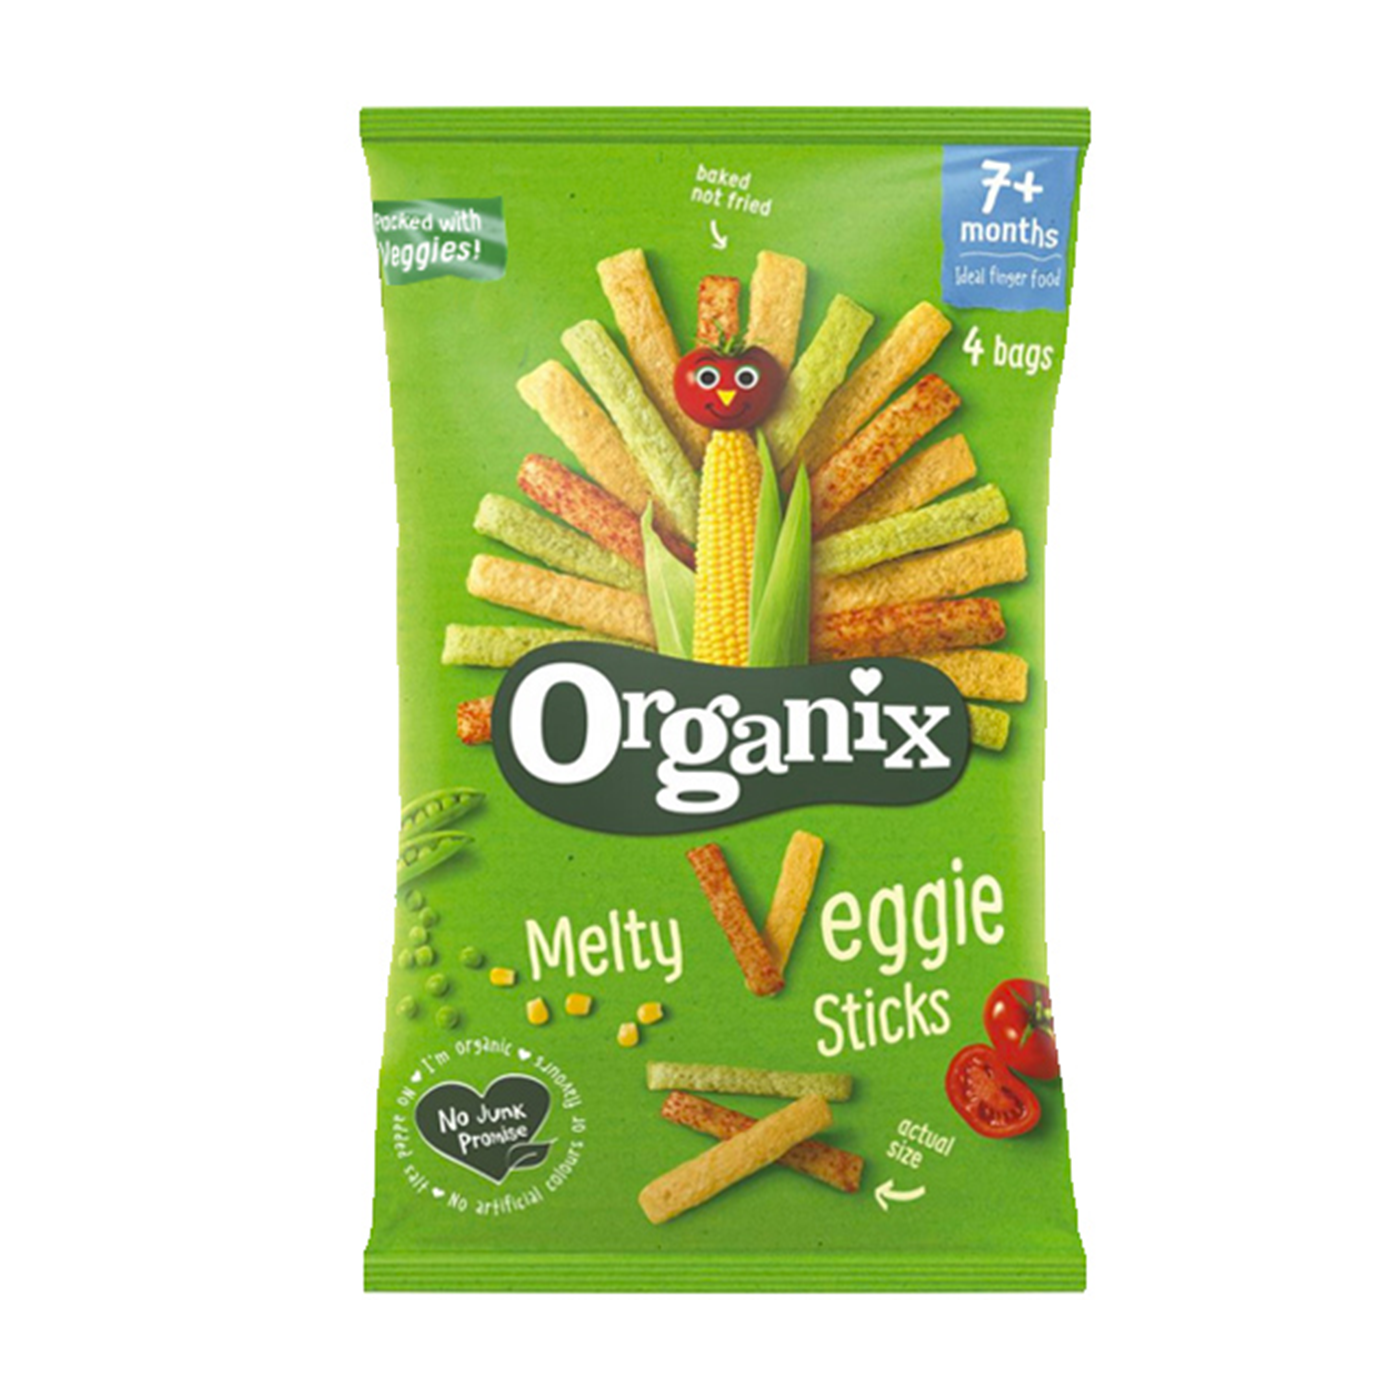 Βιολογικό σνακ λαχανικών με αρακά, ντομάτα και γλυκό καλαμπόκι "Organix" 60g